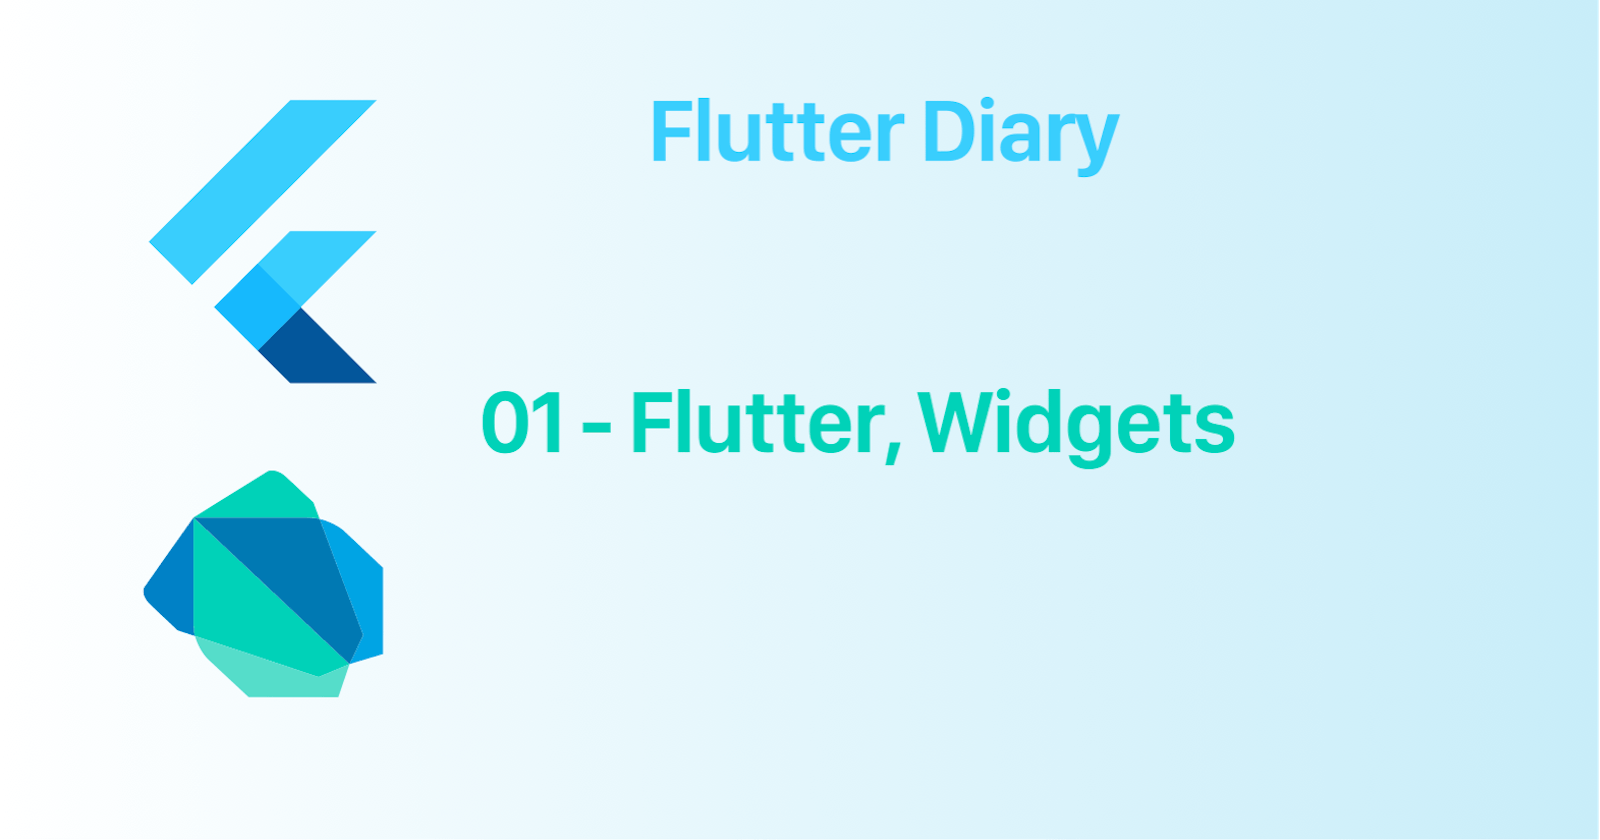 01 - Flutter Widgets